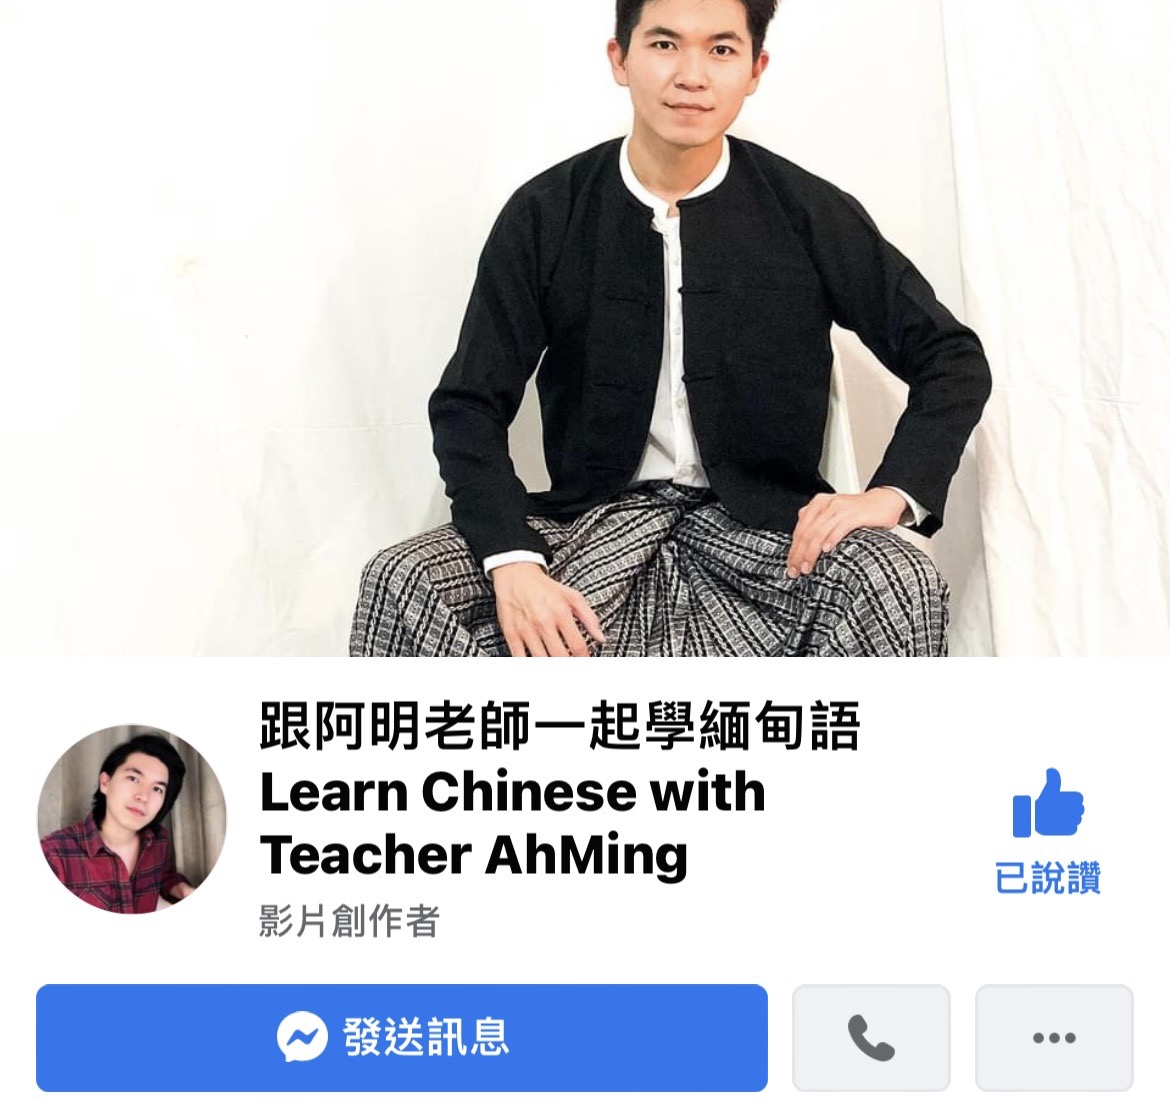 Hiện tại anh Trần Khải Minh cũng đang mở các lớp học tiếng Myanmar tại Đại học Đông Ngô (東吳大學) , rất hoan nghênh quý vị độc giả đăng ký tham gia khóa học. (Nguồn ảnh: Facebook “跟阿明老師一起學緬甸語”)